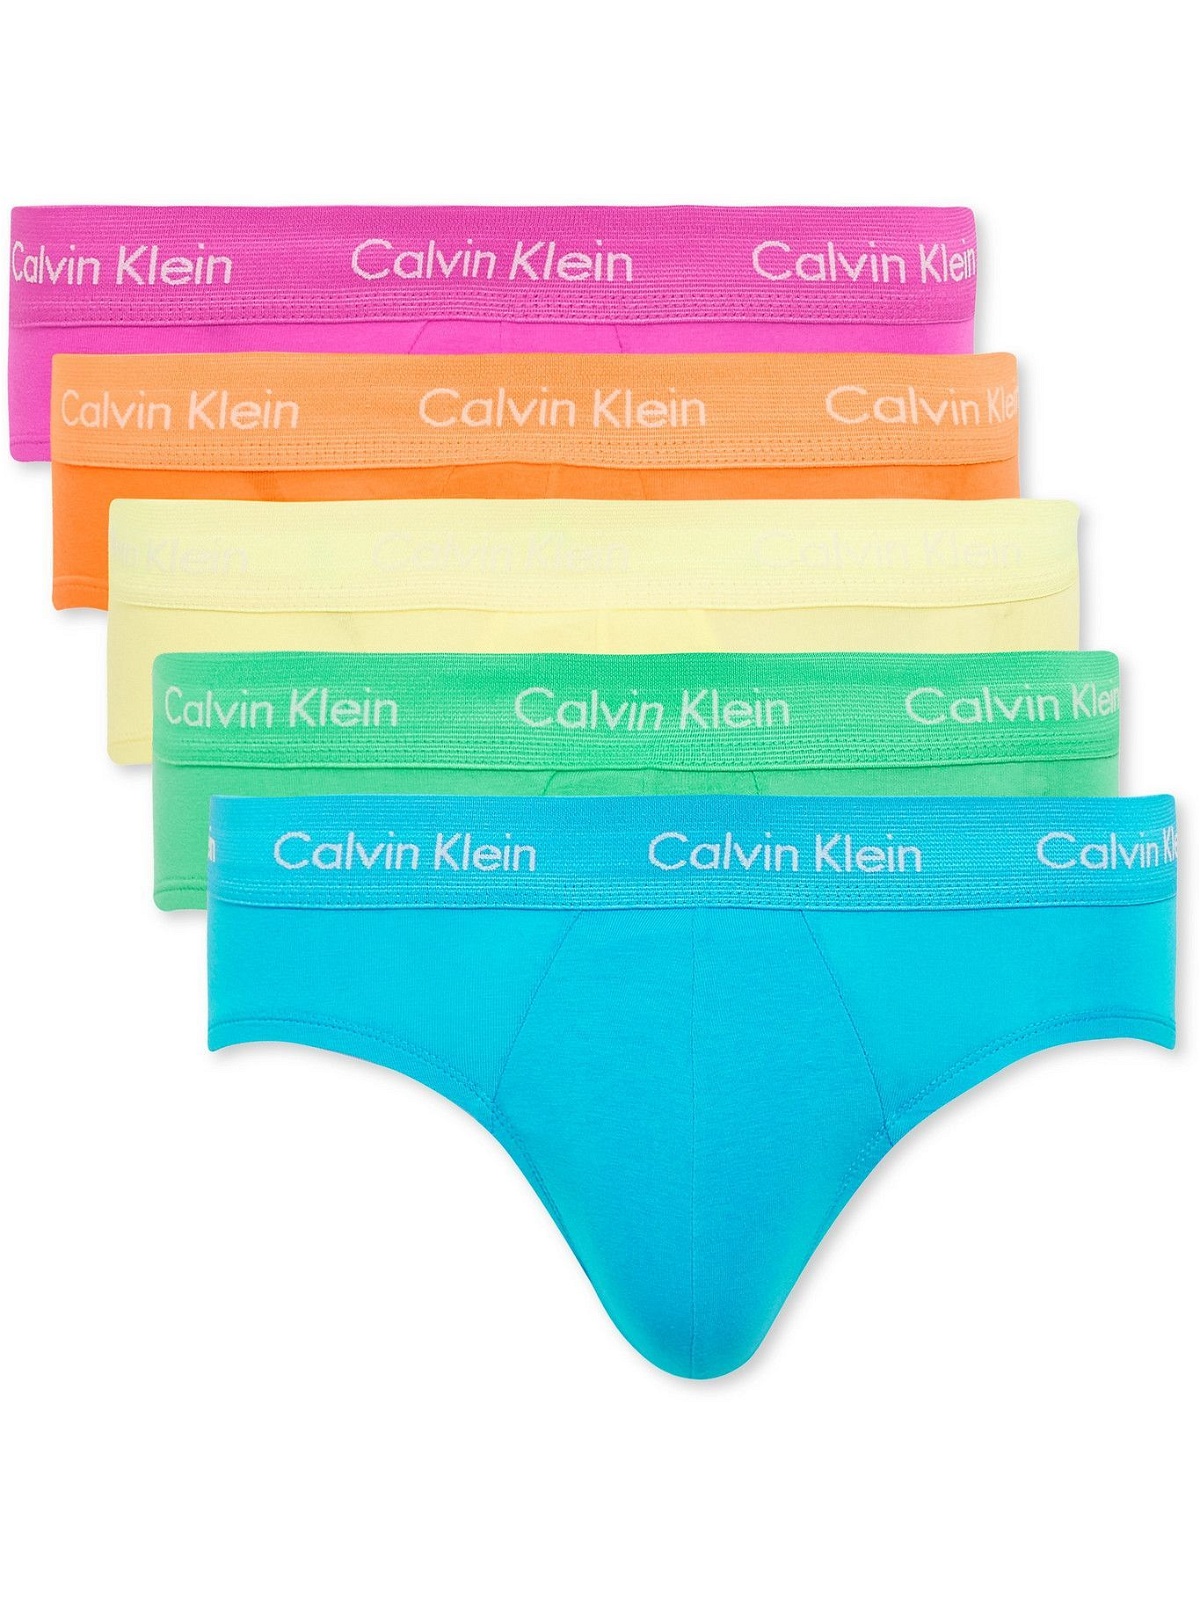 Calvin Klein Underwear THE PRIDE EDIT TRUNK 5 PACK - Pants